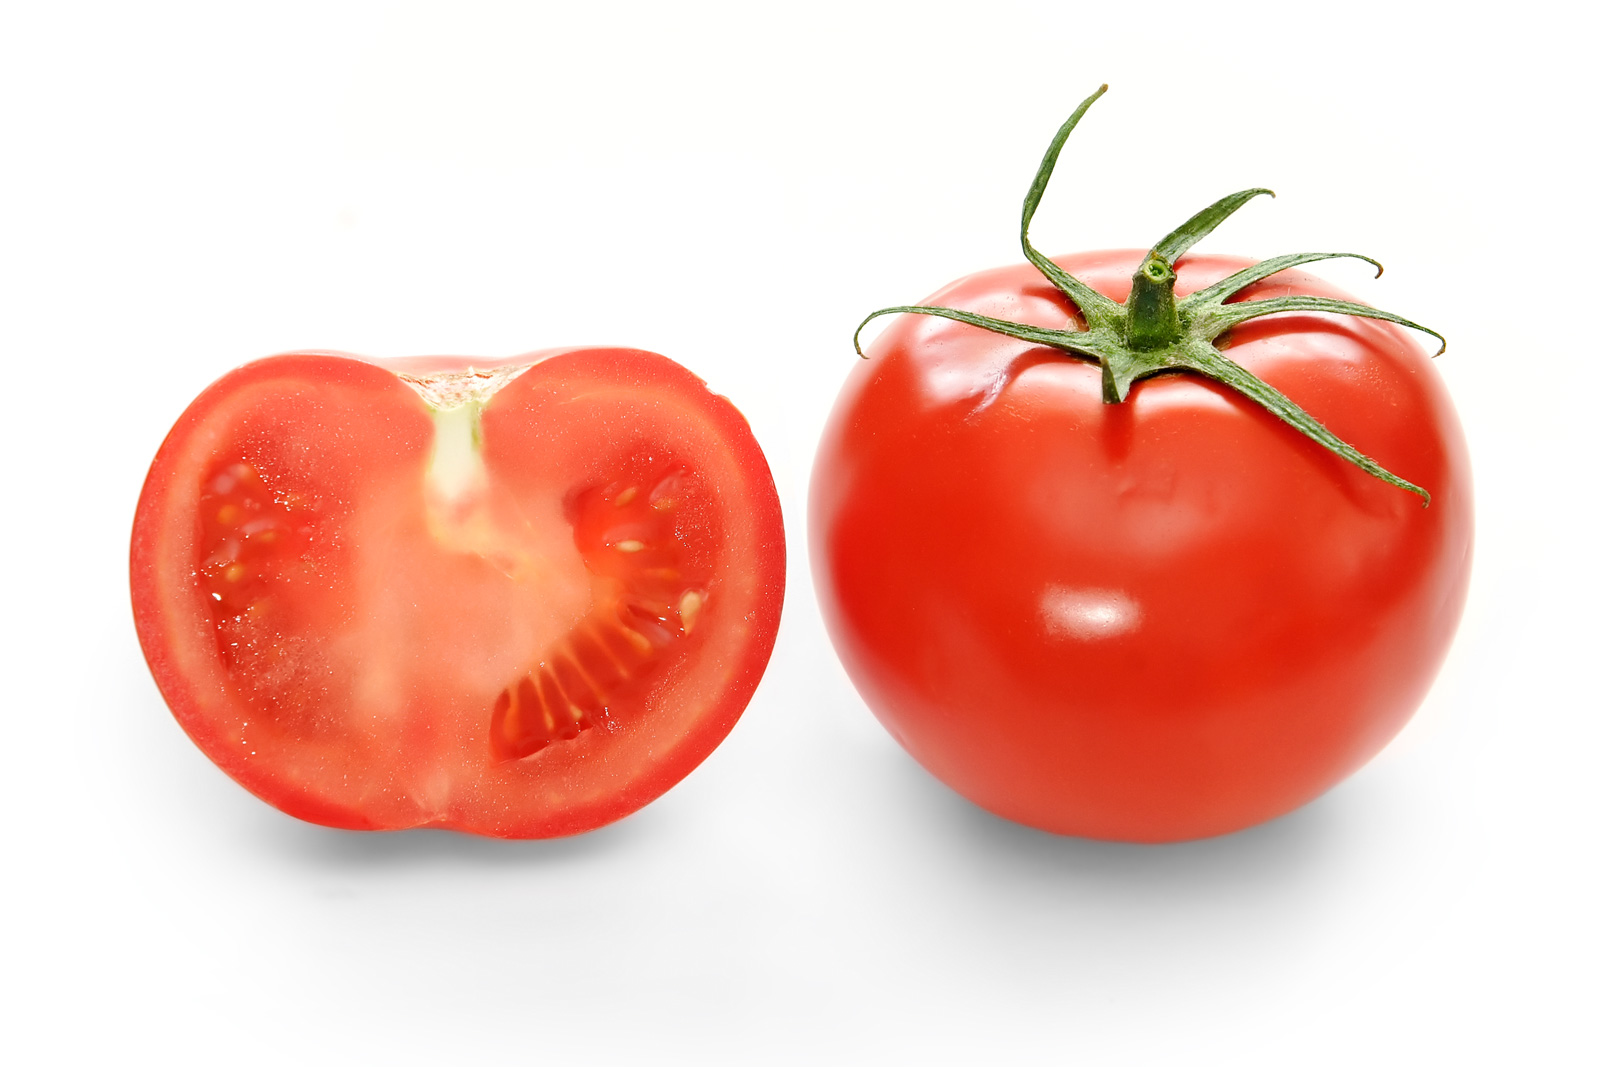 ابتعد عن تناول الطماطم في تلك الحالات كي لا تخسر صحتك